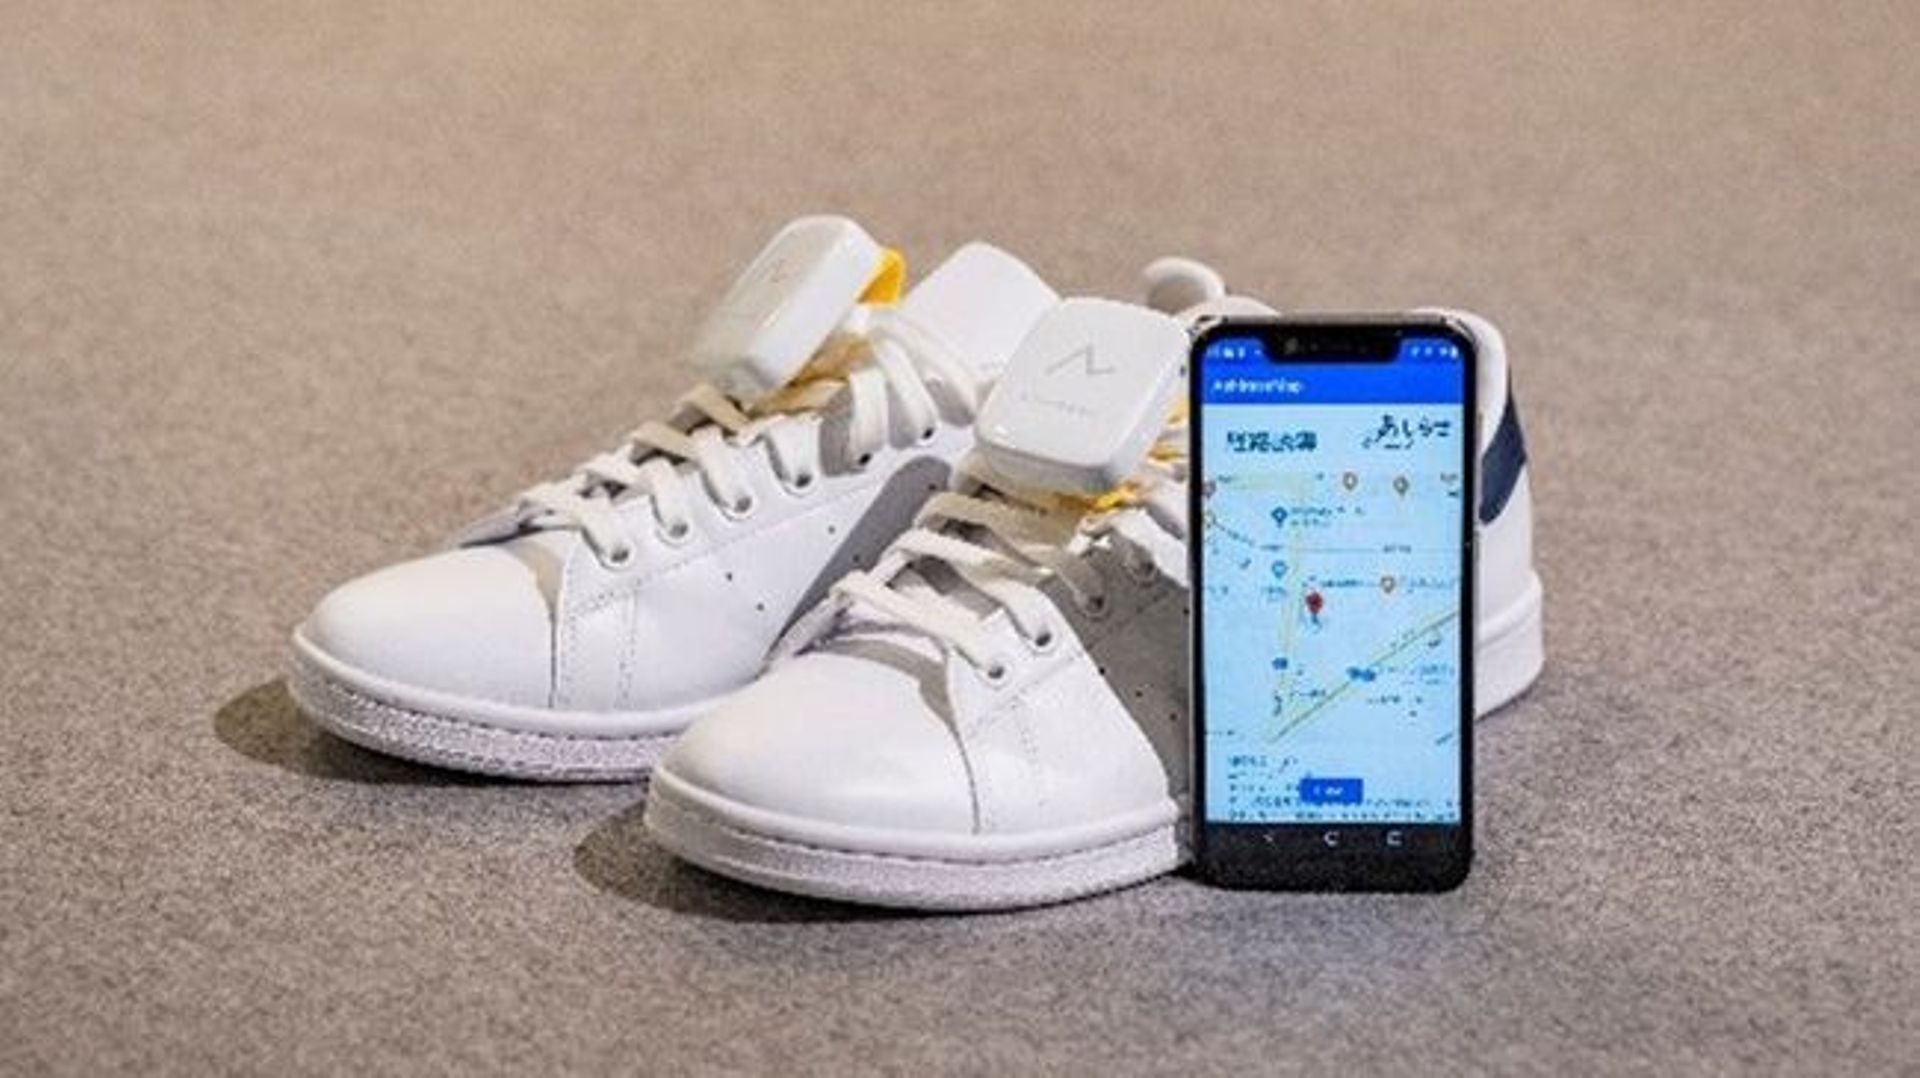 Le système de navigation GPS à glisser dans des chaussures Ashirase que développe actuellement Honda via la start-up Ashirase, Inc.